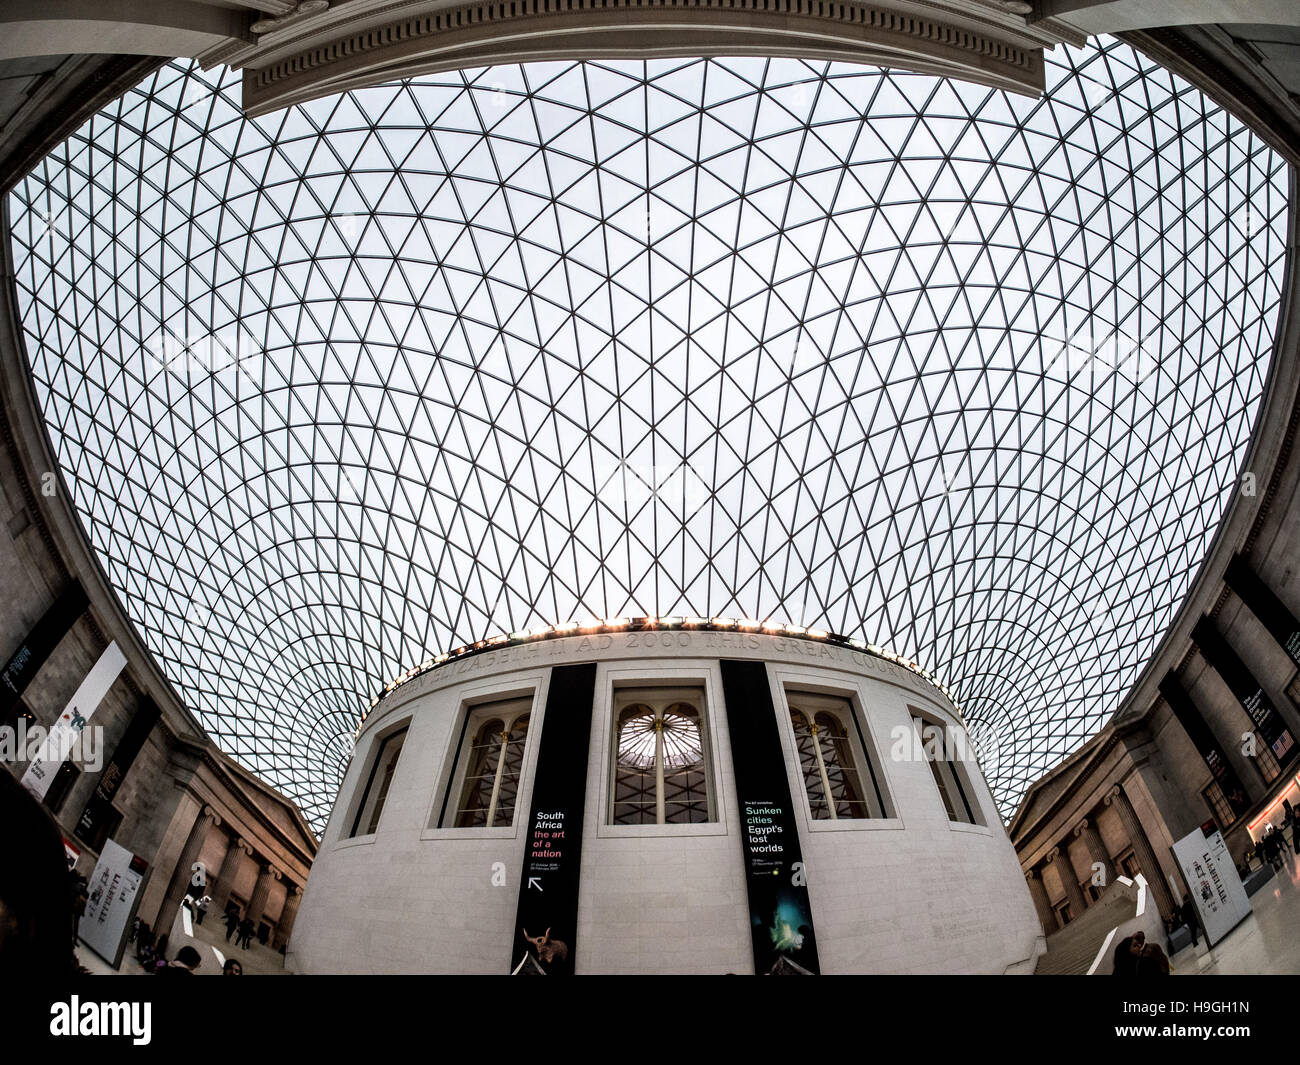 Königin Elizabeth II Great Court entworfen von Foster and Partners, das British Museum, London, UK. Stockfoto